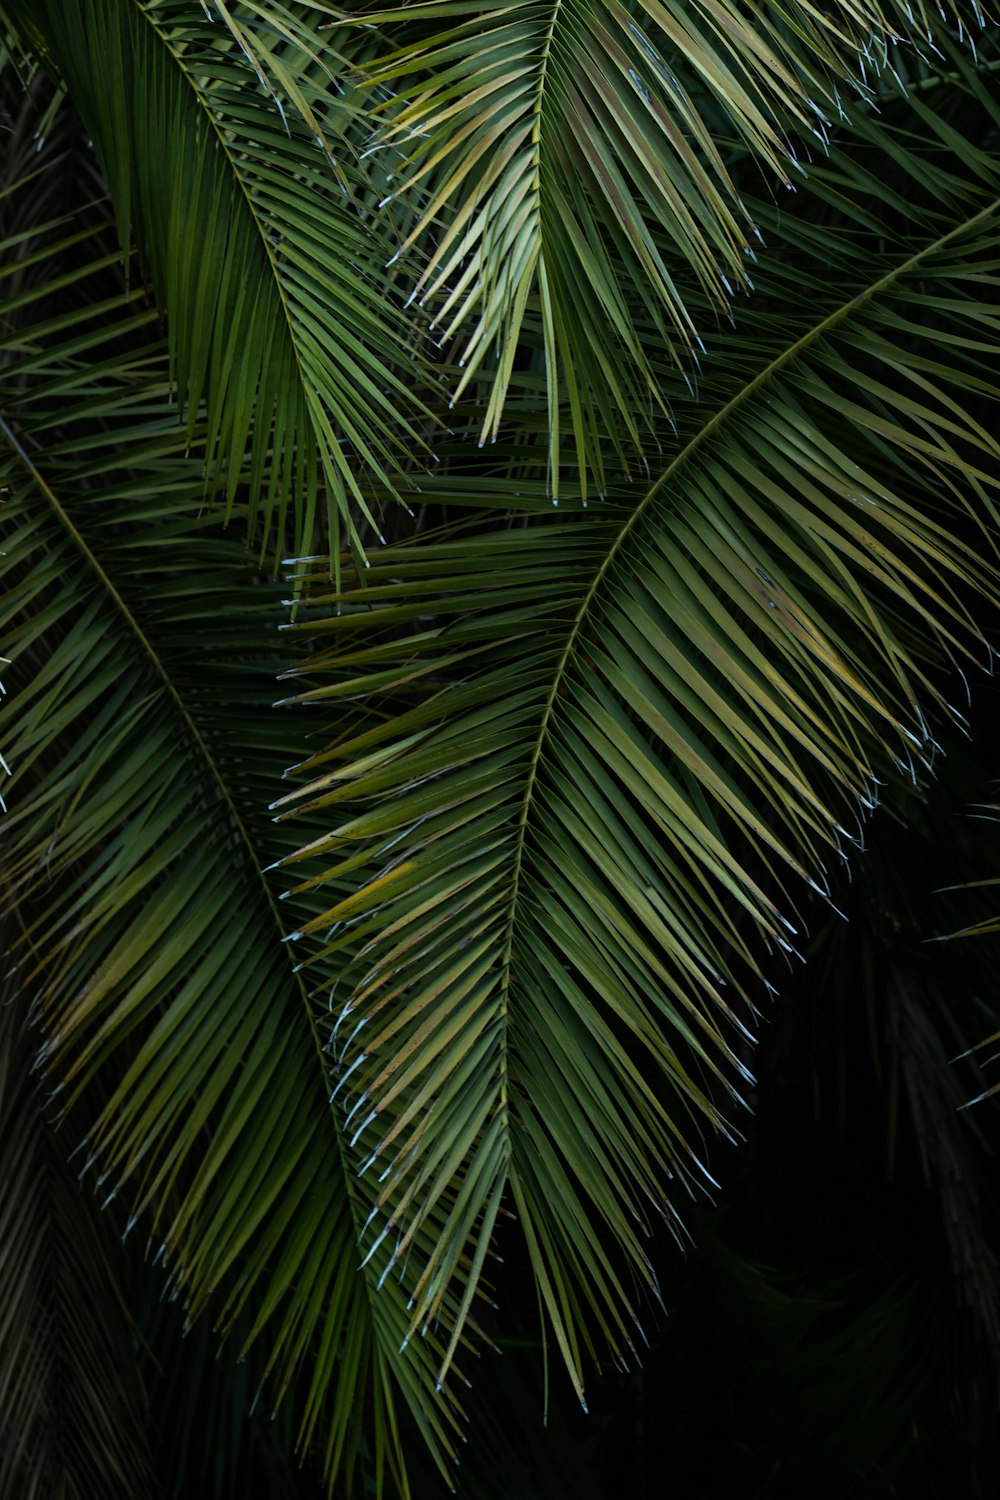 Palmier vert pendant la nuit